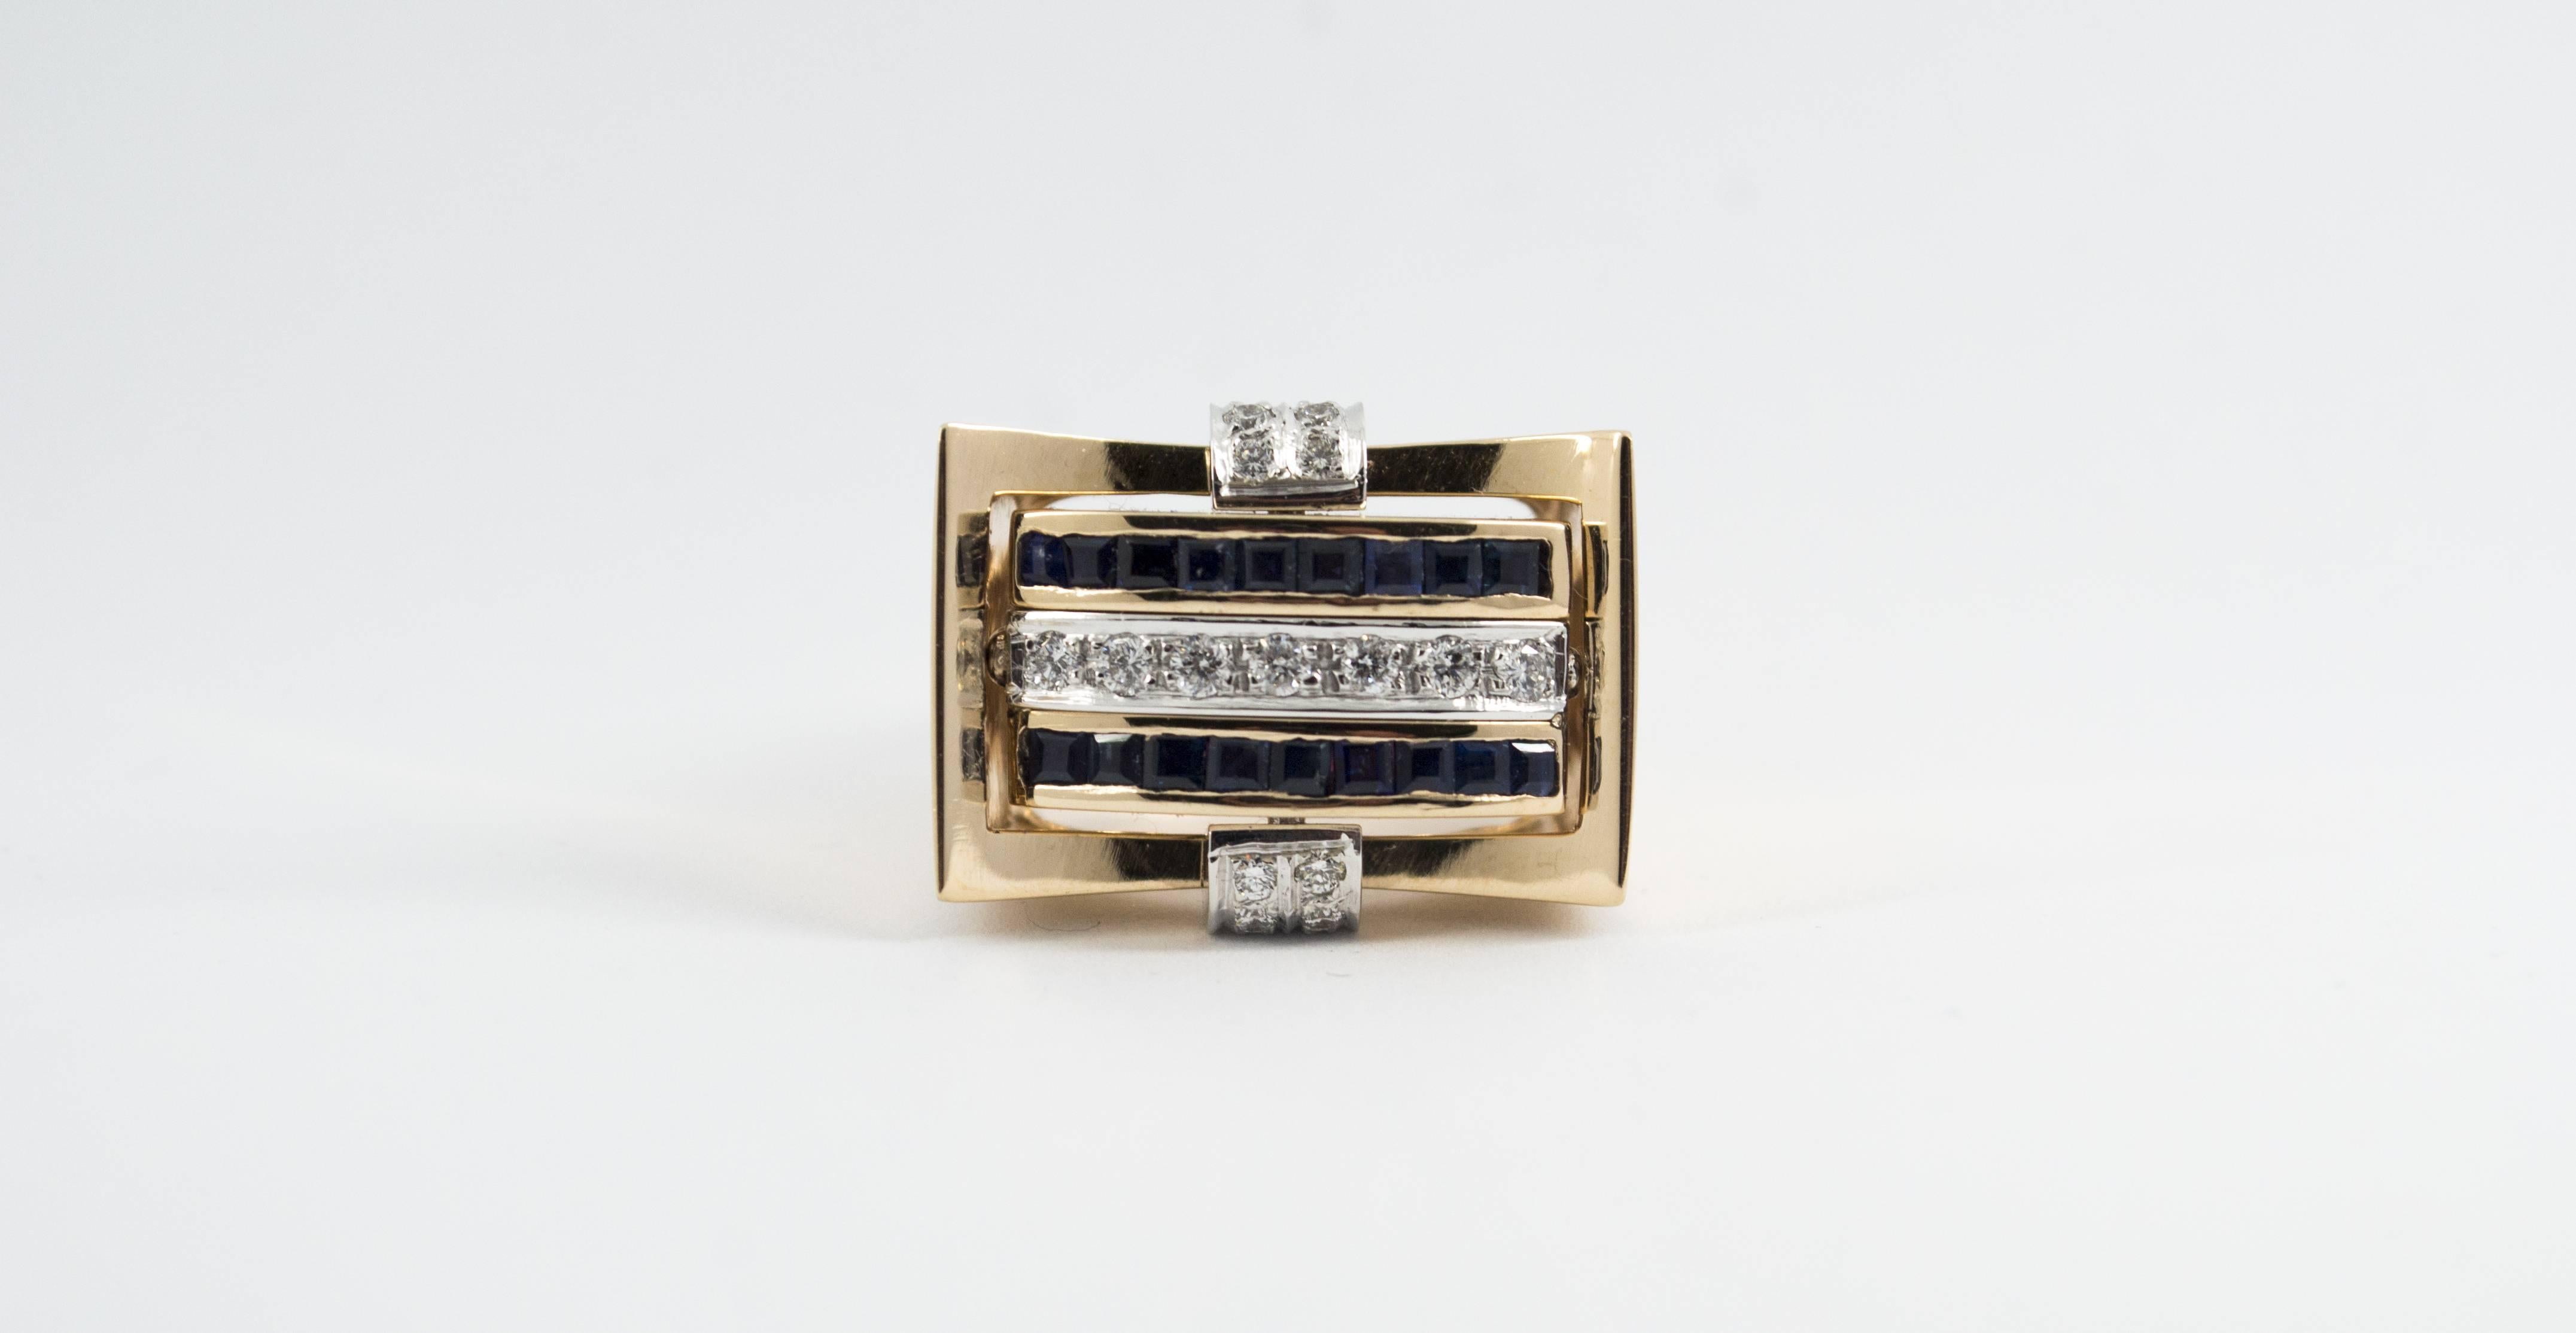 Dieser Ring ist aus 14K Gelbgold gefertigt.
Dieser Ring hat 0,50 Karat weiße Diamanten.
Dieser Ring hat 0,50 Karat Rubine.
Dieser Ring hat 0,50 Karat blaue Saphire.
Dieser Ring ist vom Stil der Renaissance inspiriert.
Größe ITA: 15 USA: 7
Da wir